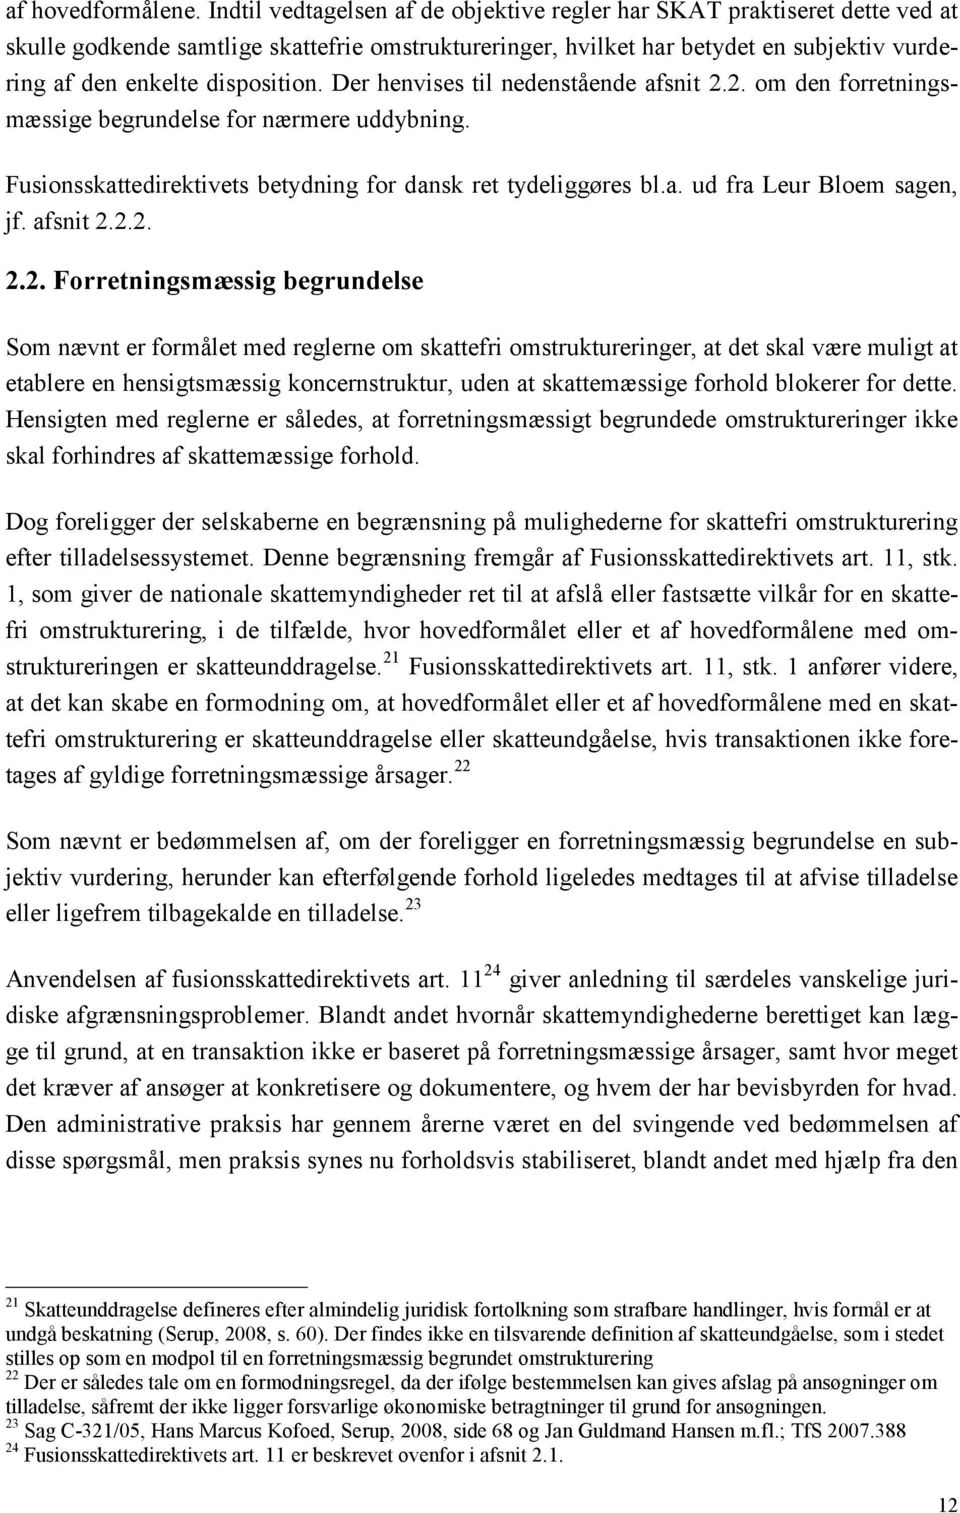 disposition. Der henvises til nedenstående afsnit 2.2. om den forretningsmæssige begrundelse for nærmere uddybning. Fusionsskattedirektivets betydning for dansk ret tydeliggøres bl.a. ud fra Leur Bloem sagen, jf.